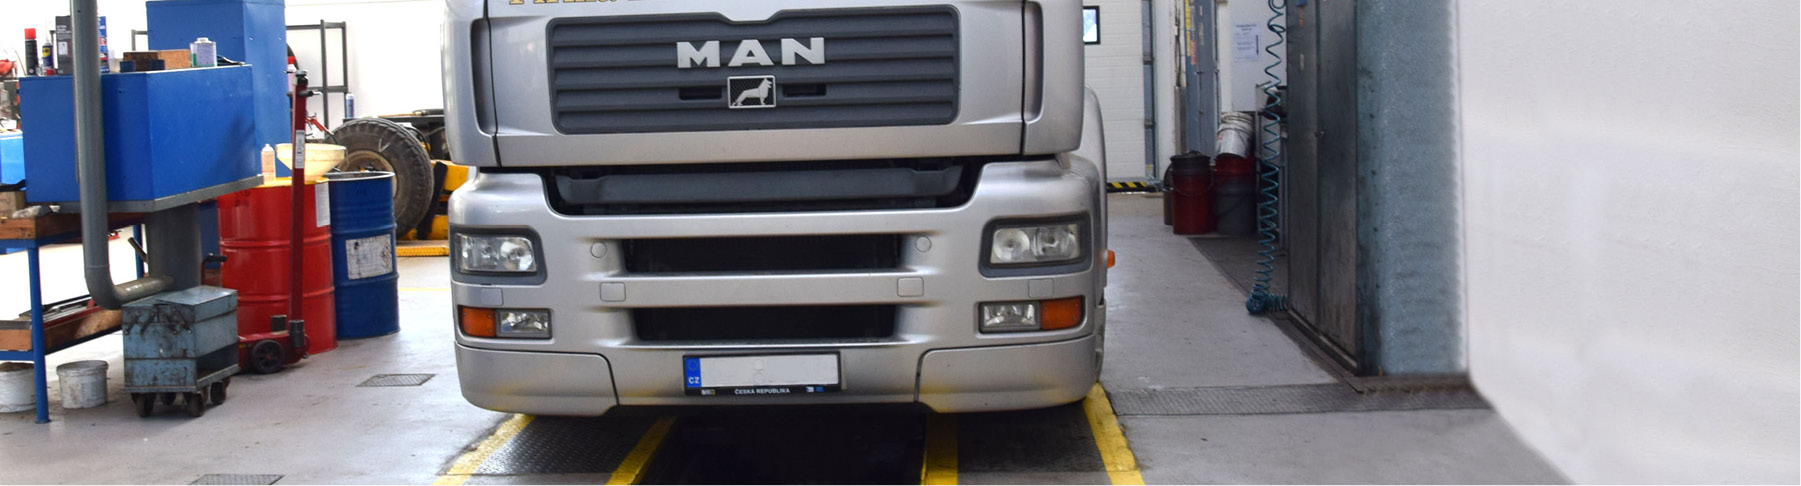 Opravy a údržba nákladních automobilů a vleků, komunálních vozidel a smykových nakladačů